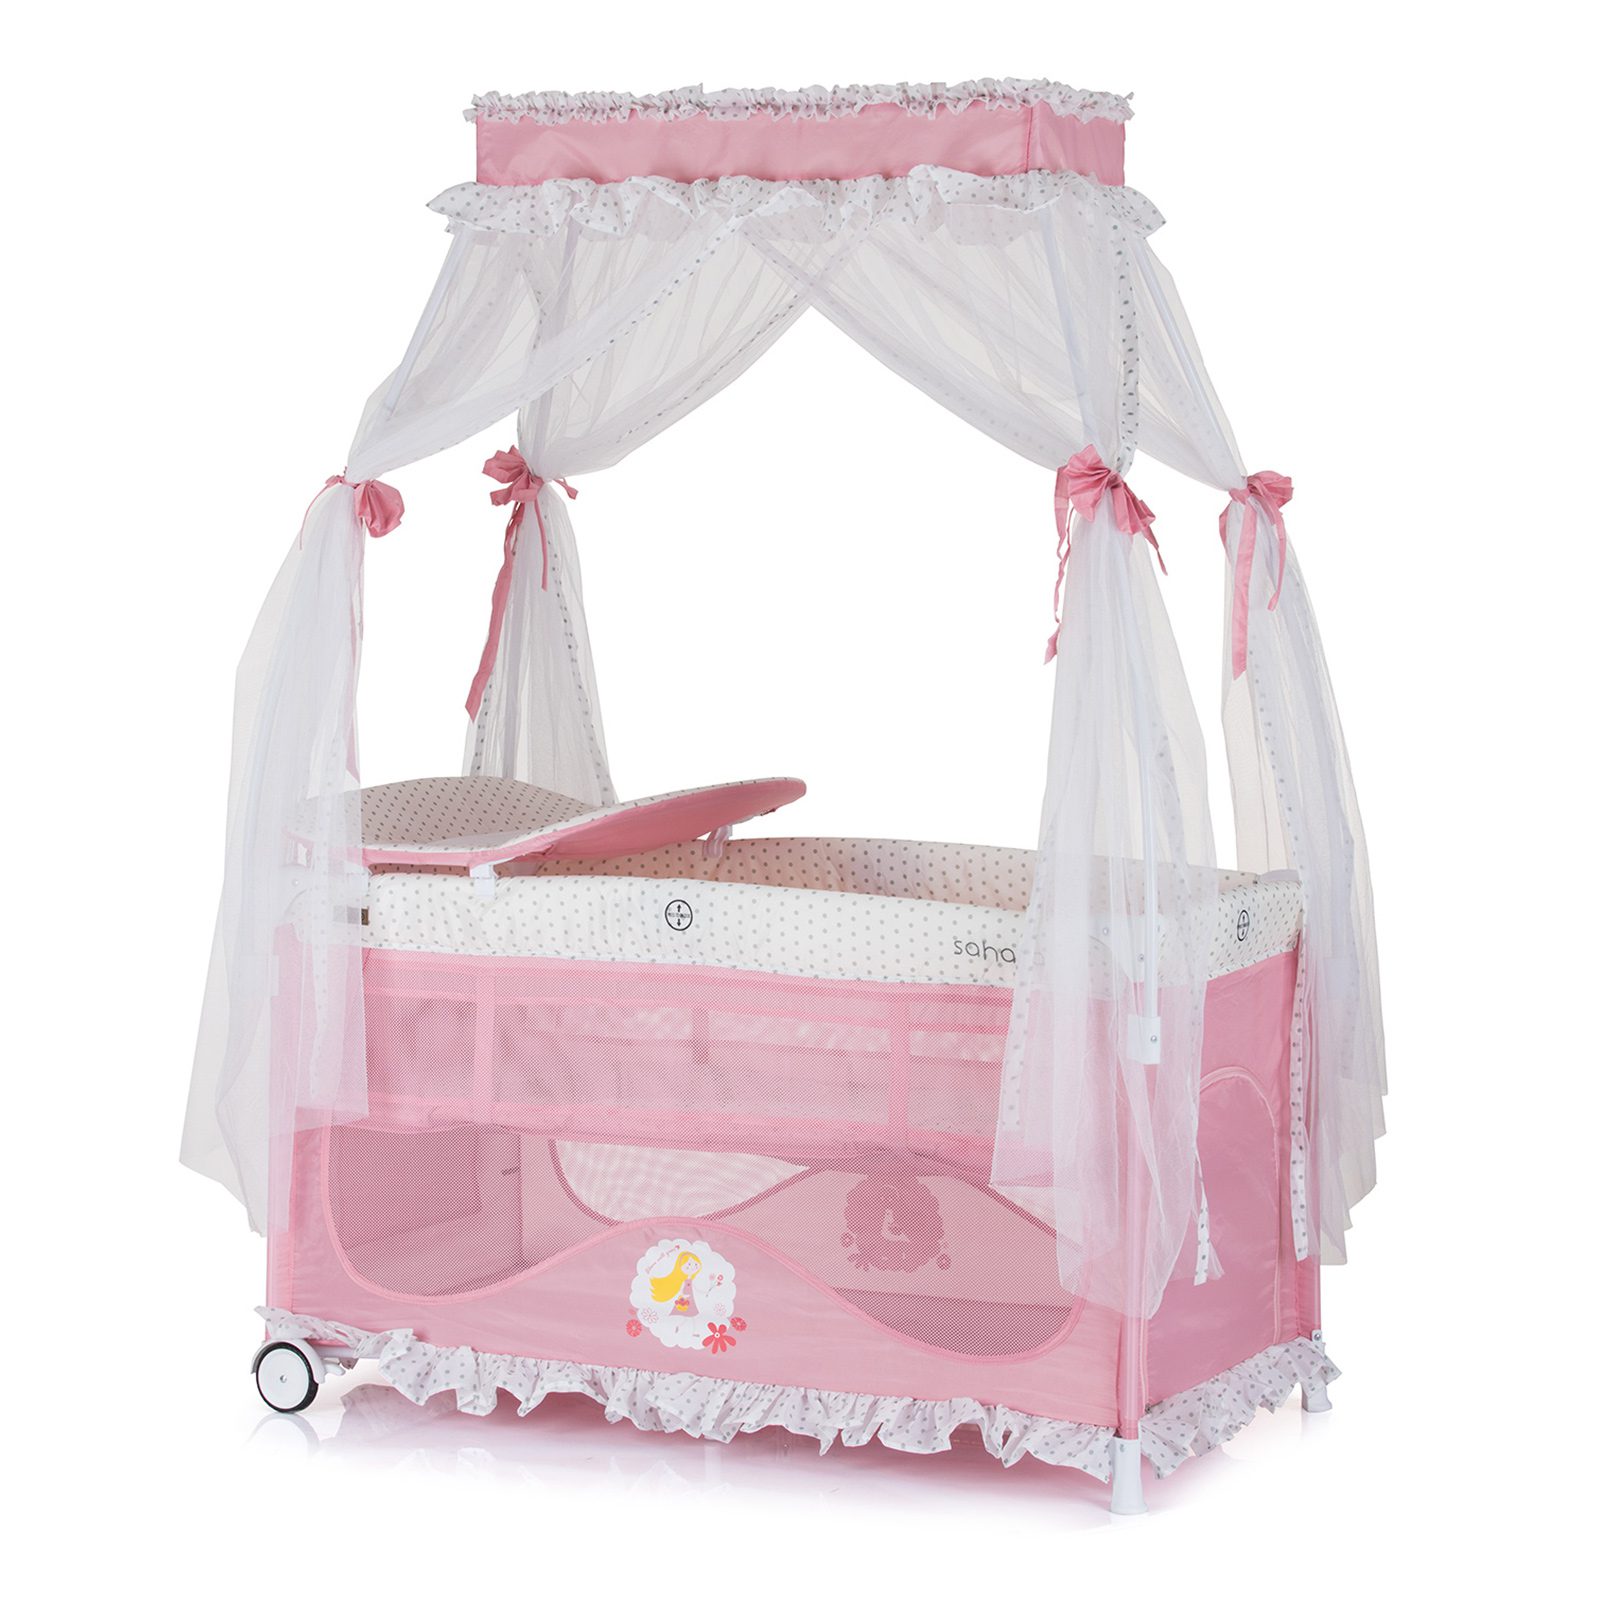 Campingbedje Sahara roze princess, geschikt voor newborns 0+ kopen?